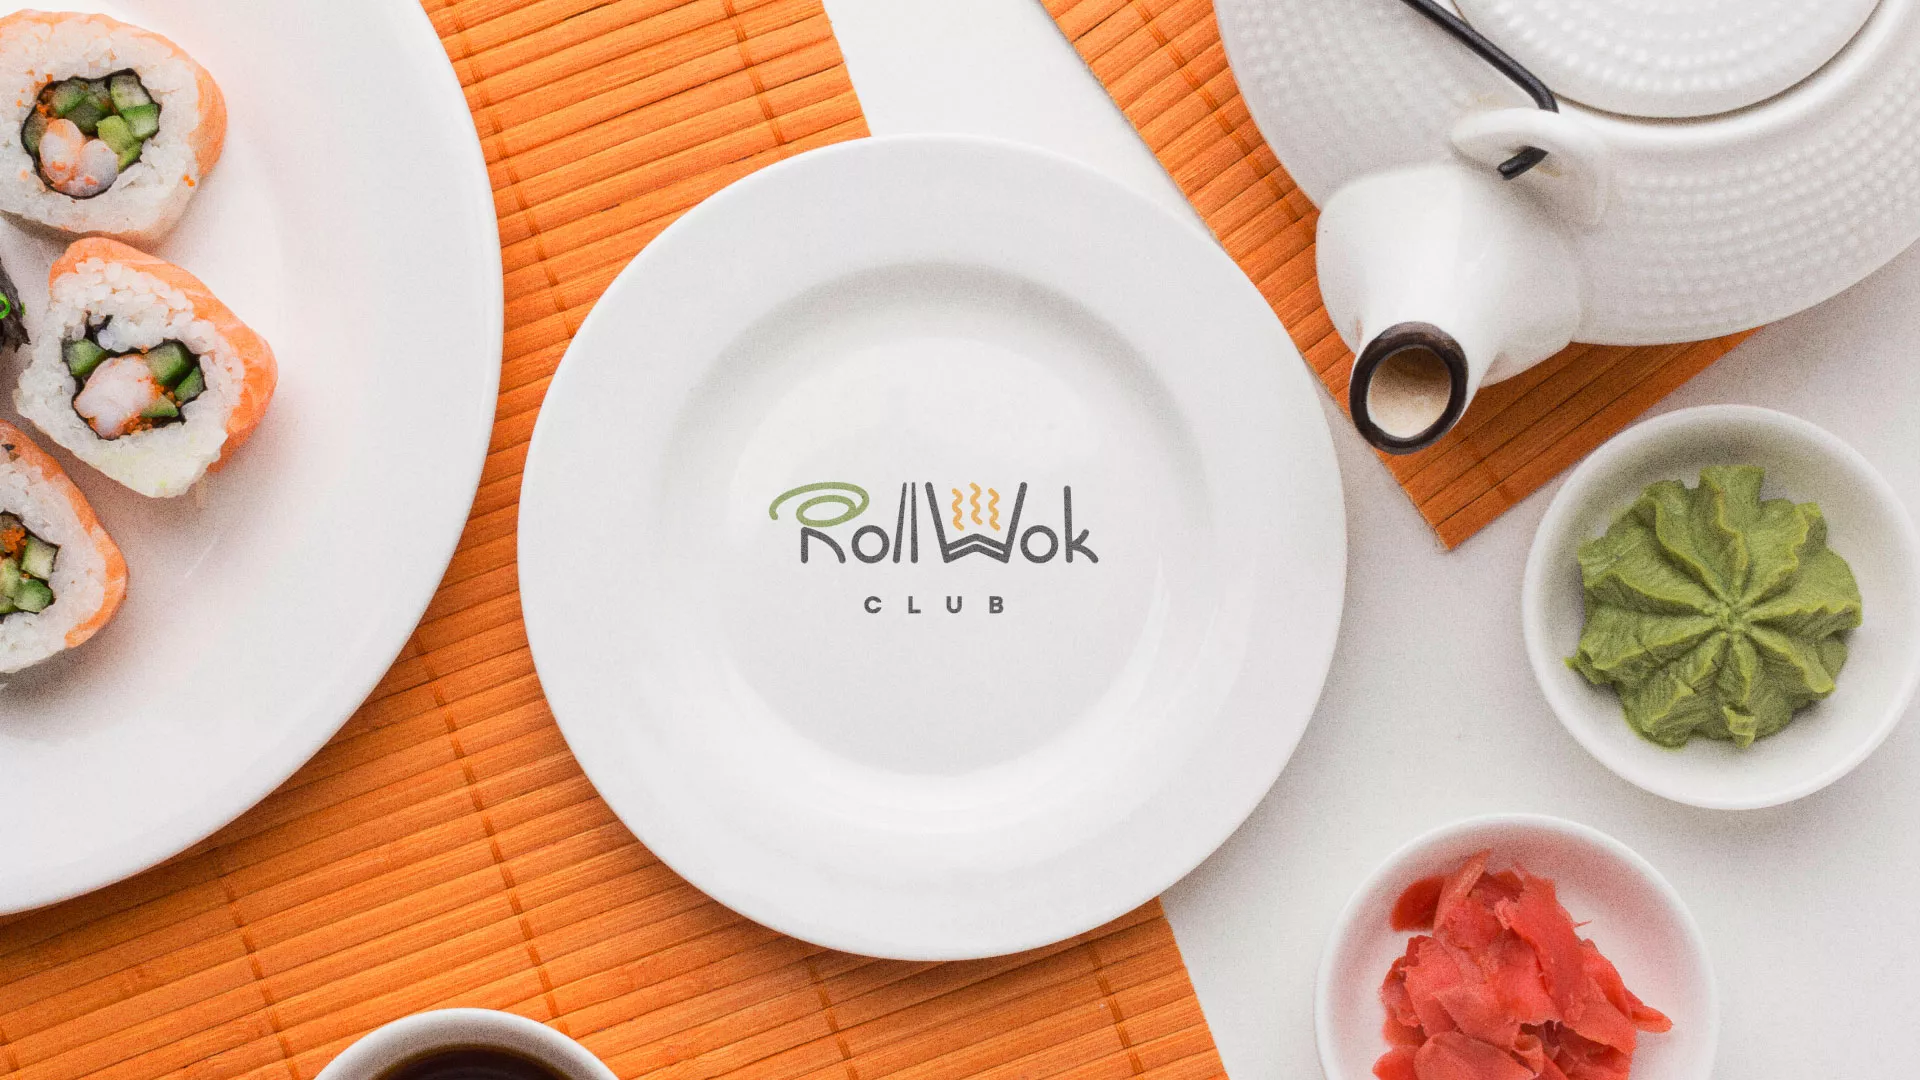 Разработка логотипа и фирменного стиля суши-бара «Roll Wok Club» в Урус-Мартане